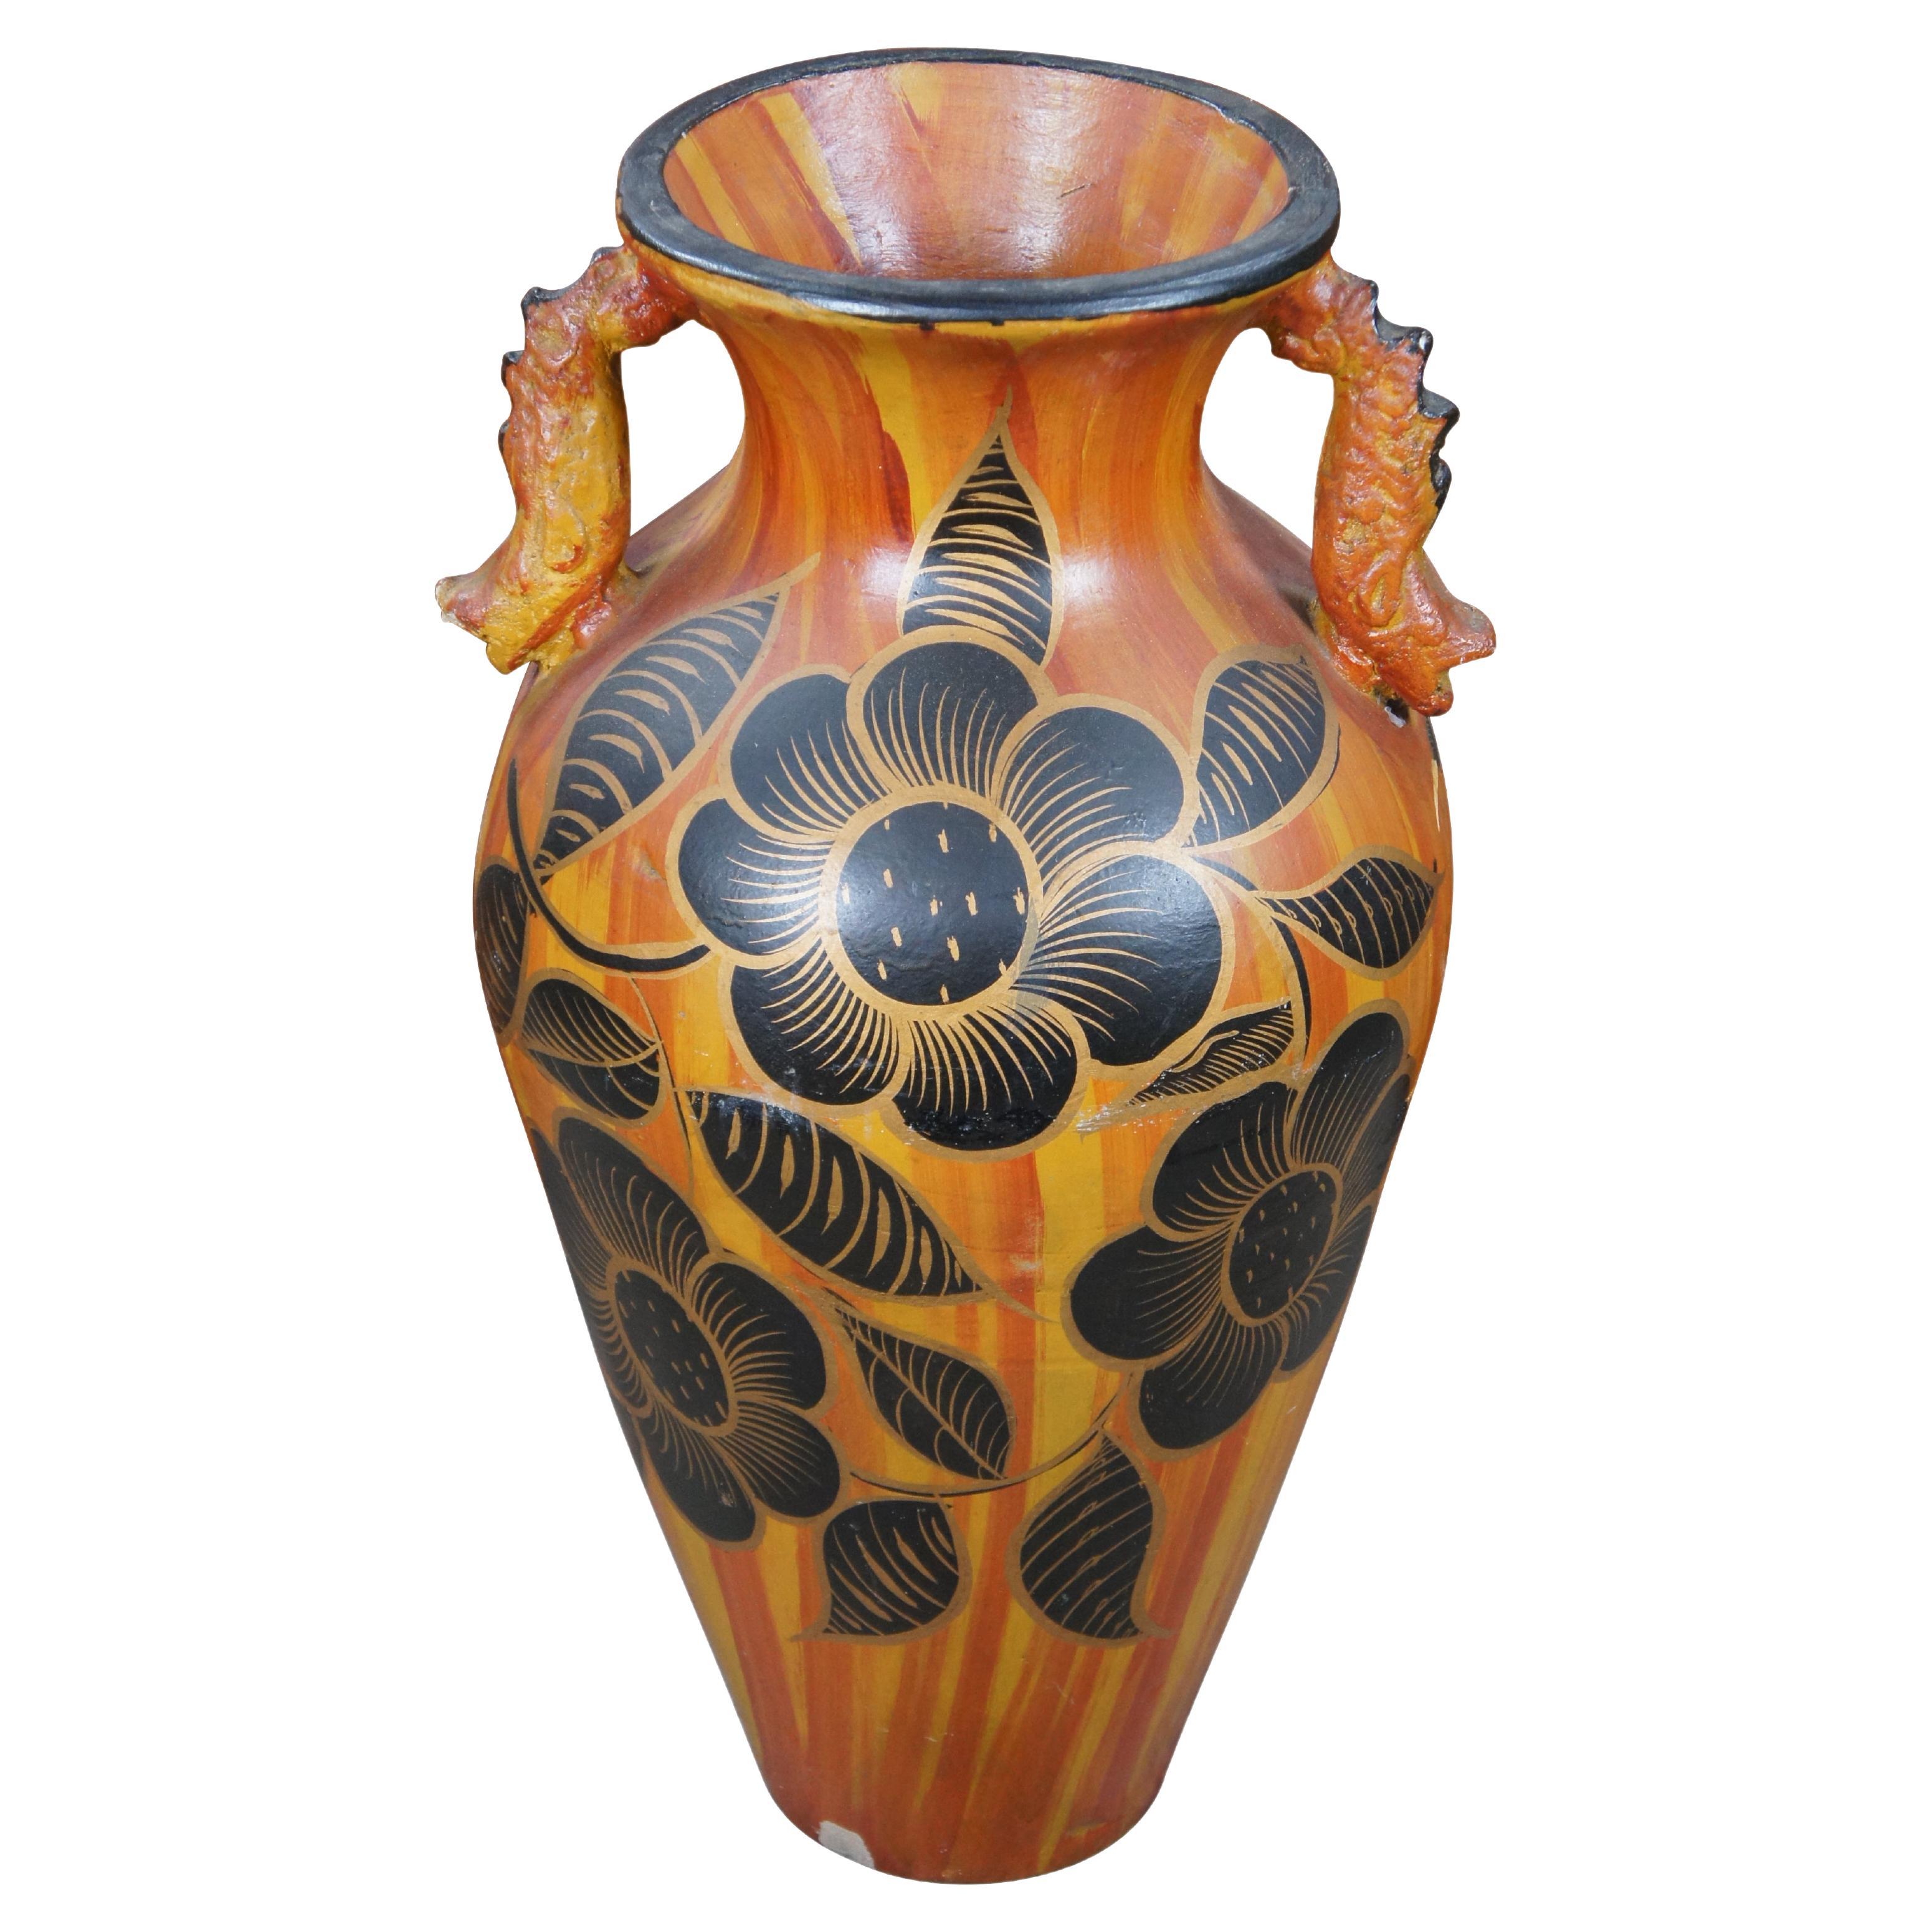 Vintage Terracotta Handted Dragon & Floral Handled Floor Vase Jar Urn 29" (Terre cuite peinte à la main avec un dragon et des fleurs)